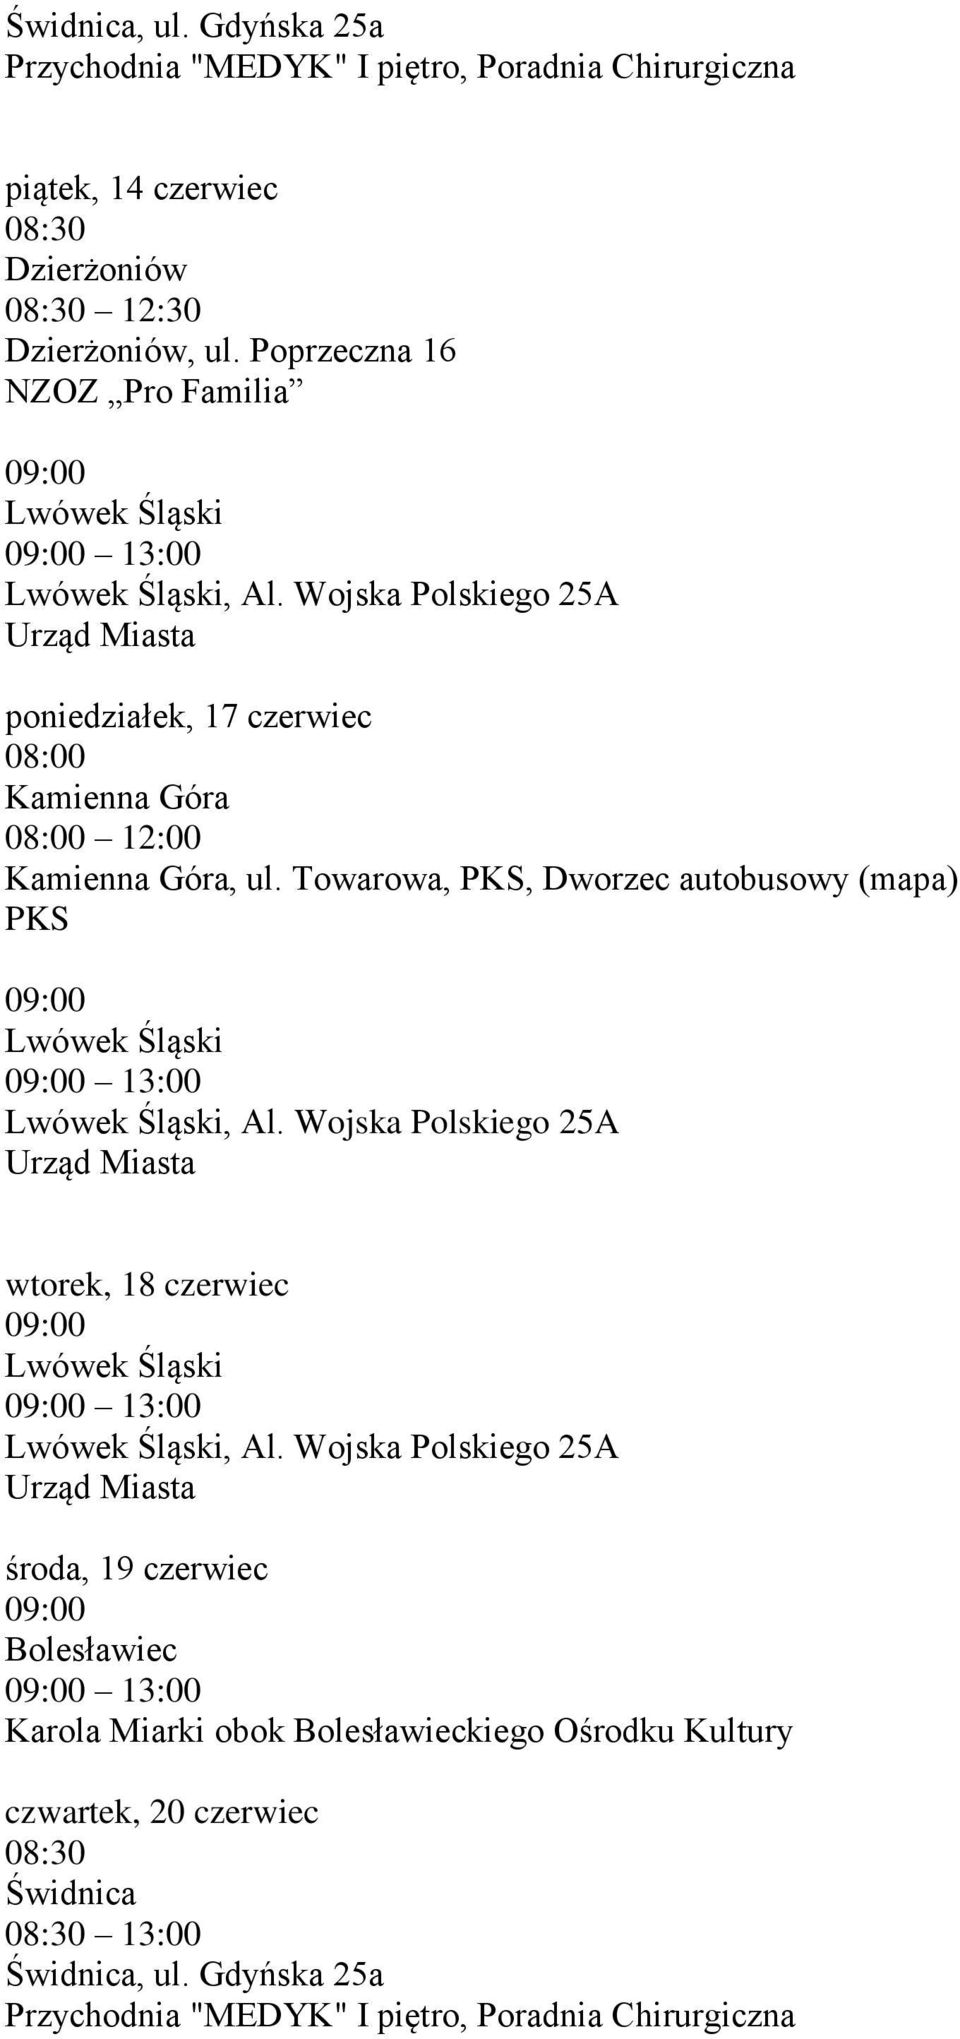 Wojska Polskiego 25A poniedziałek, 17 czerwiec 12:00, ul. Towarowa, PKS, Dworzec autobusowy (mapa) PKS Lwówek Śląski Lwówek Śląski, Al.